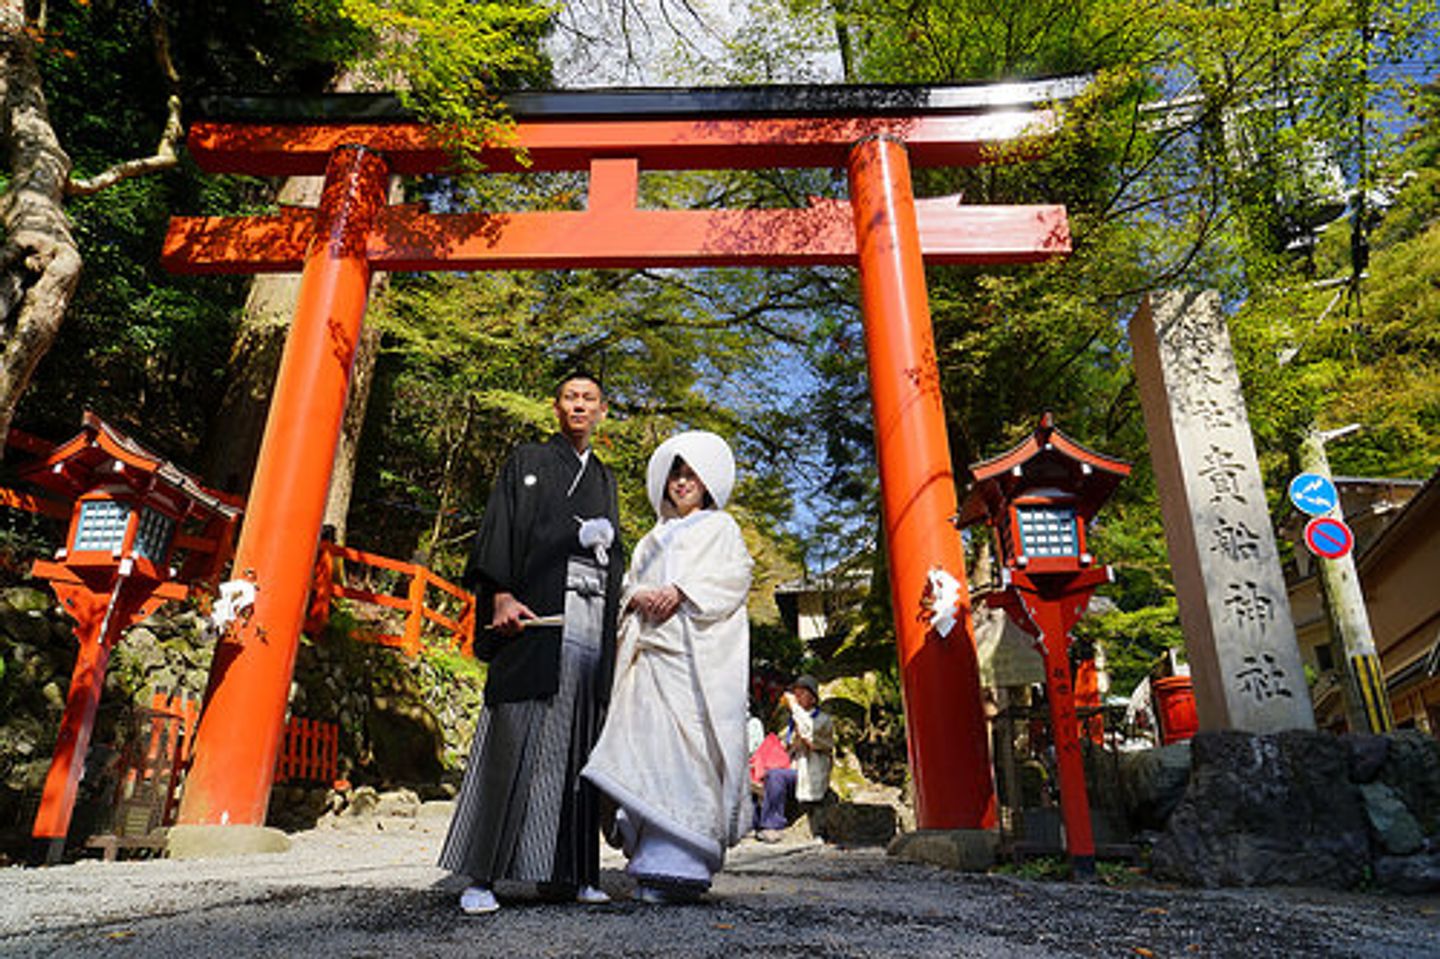 到貴船神社參加日本傳統婚禮 神前結婚式 讓人徹底感受日本的傳統文化 好夢幻 好莊嚴 日本 關西 旅行酒吧